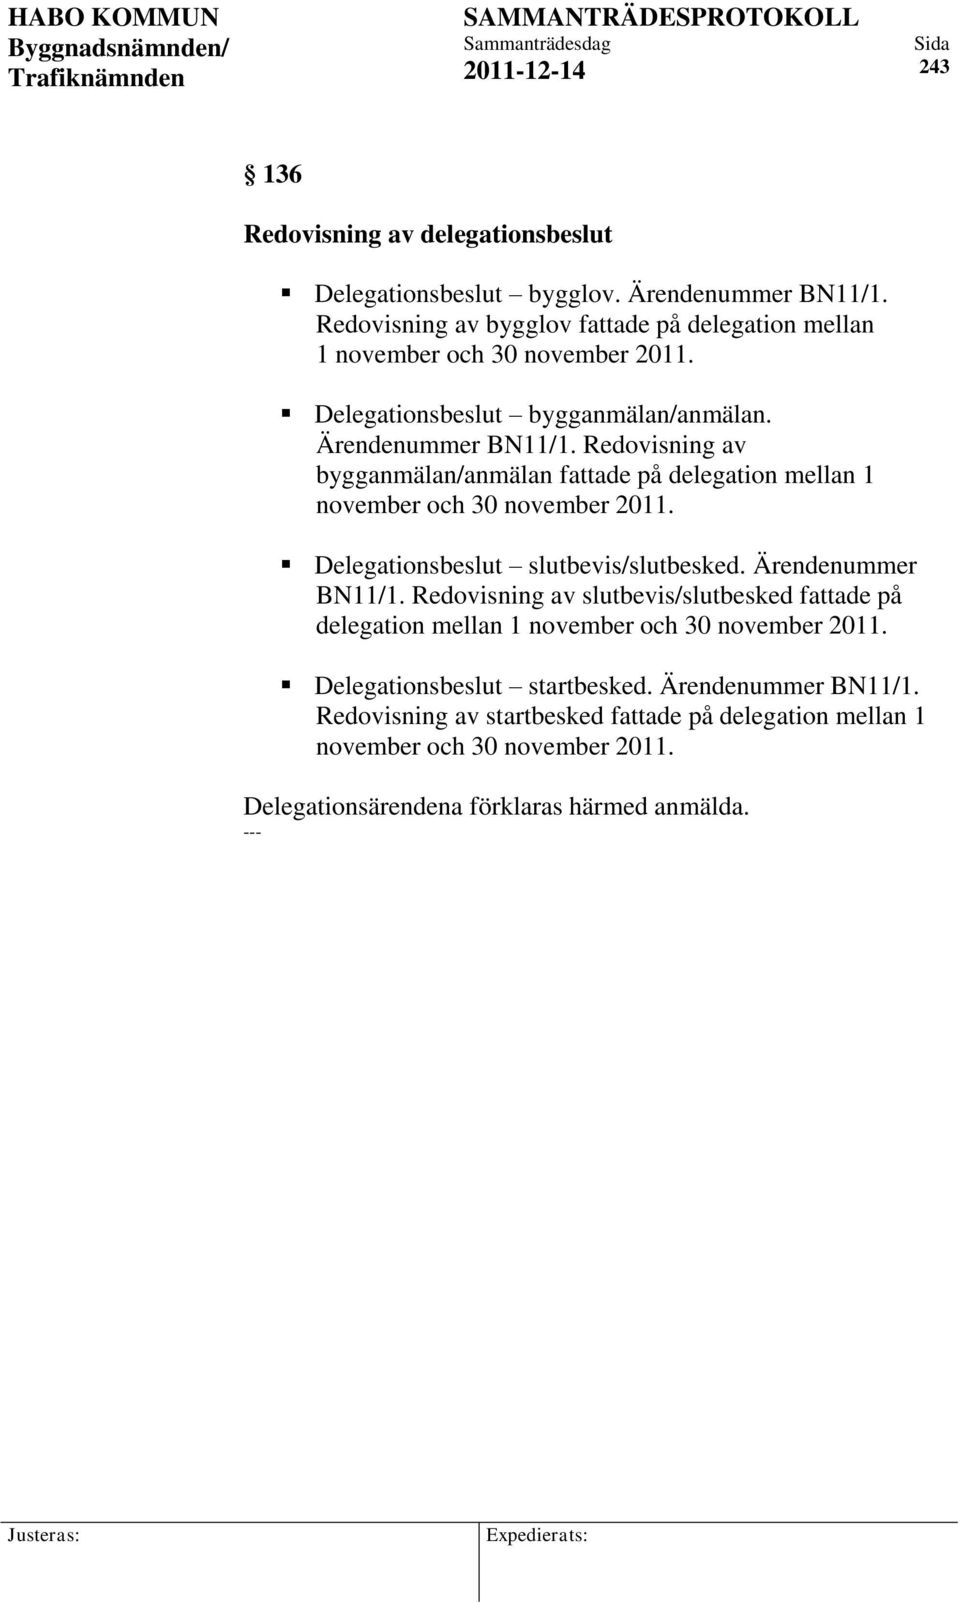 Redovisning av bygganmälan/anmälan fattade på delegation mellan 1 november och 30 november 2011. Delegationsbeslut slutbevis/slutbesked. Ärendenummer BN11/1.